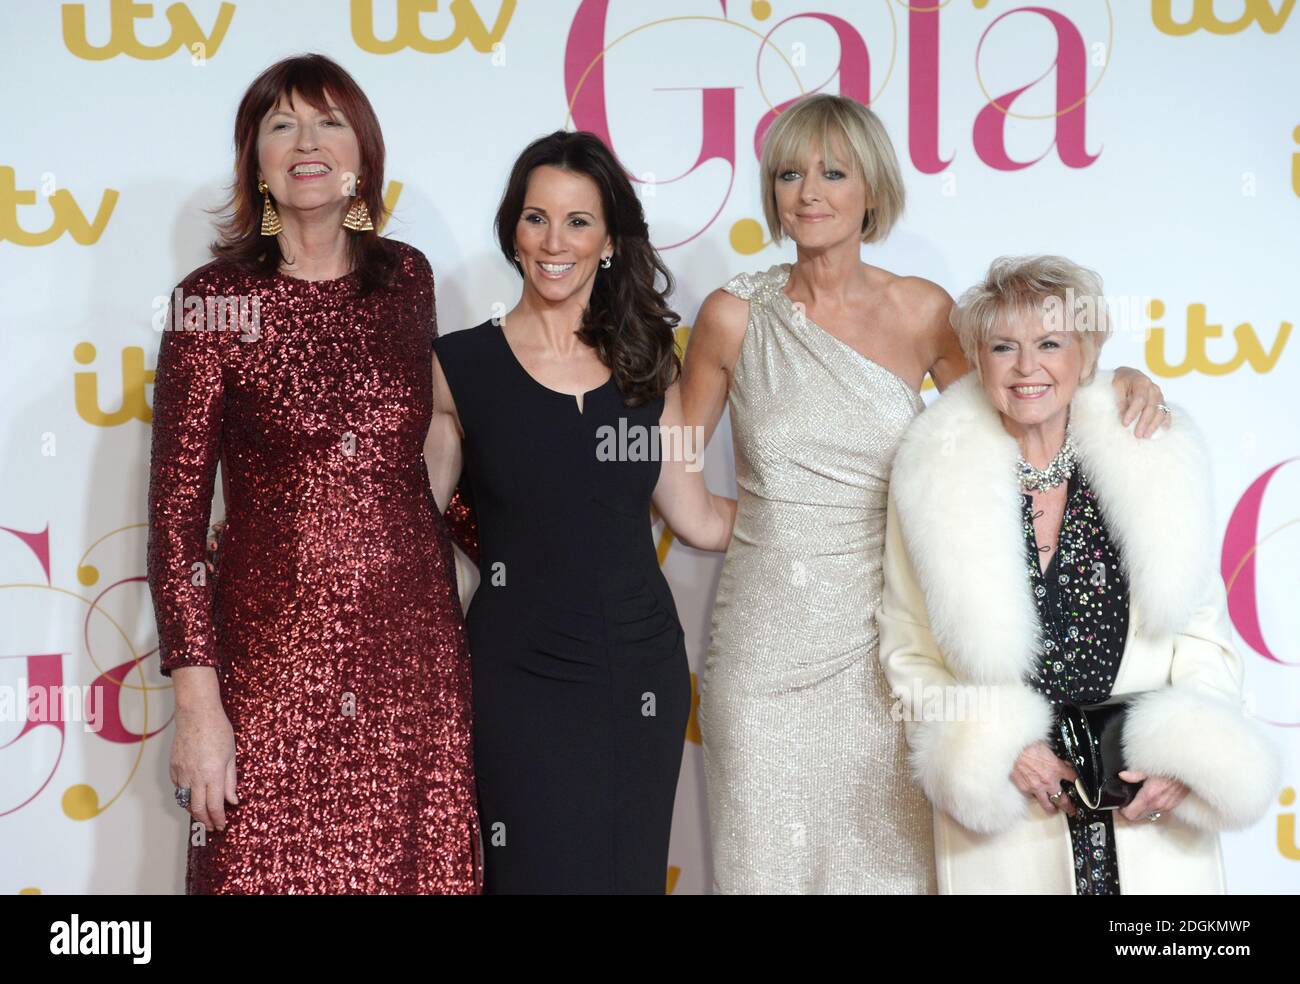 Janet Street-Porter, Andrea McLean, Jane Moore e Gloria Hunniford partecipano al Gala ITV al London Palladium. Il credito fotografico dovrebbe essere: Doug Peters EMPICS Entertainment Foto Stock